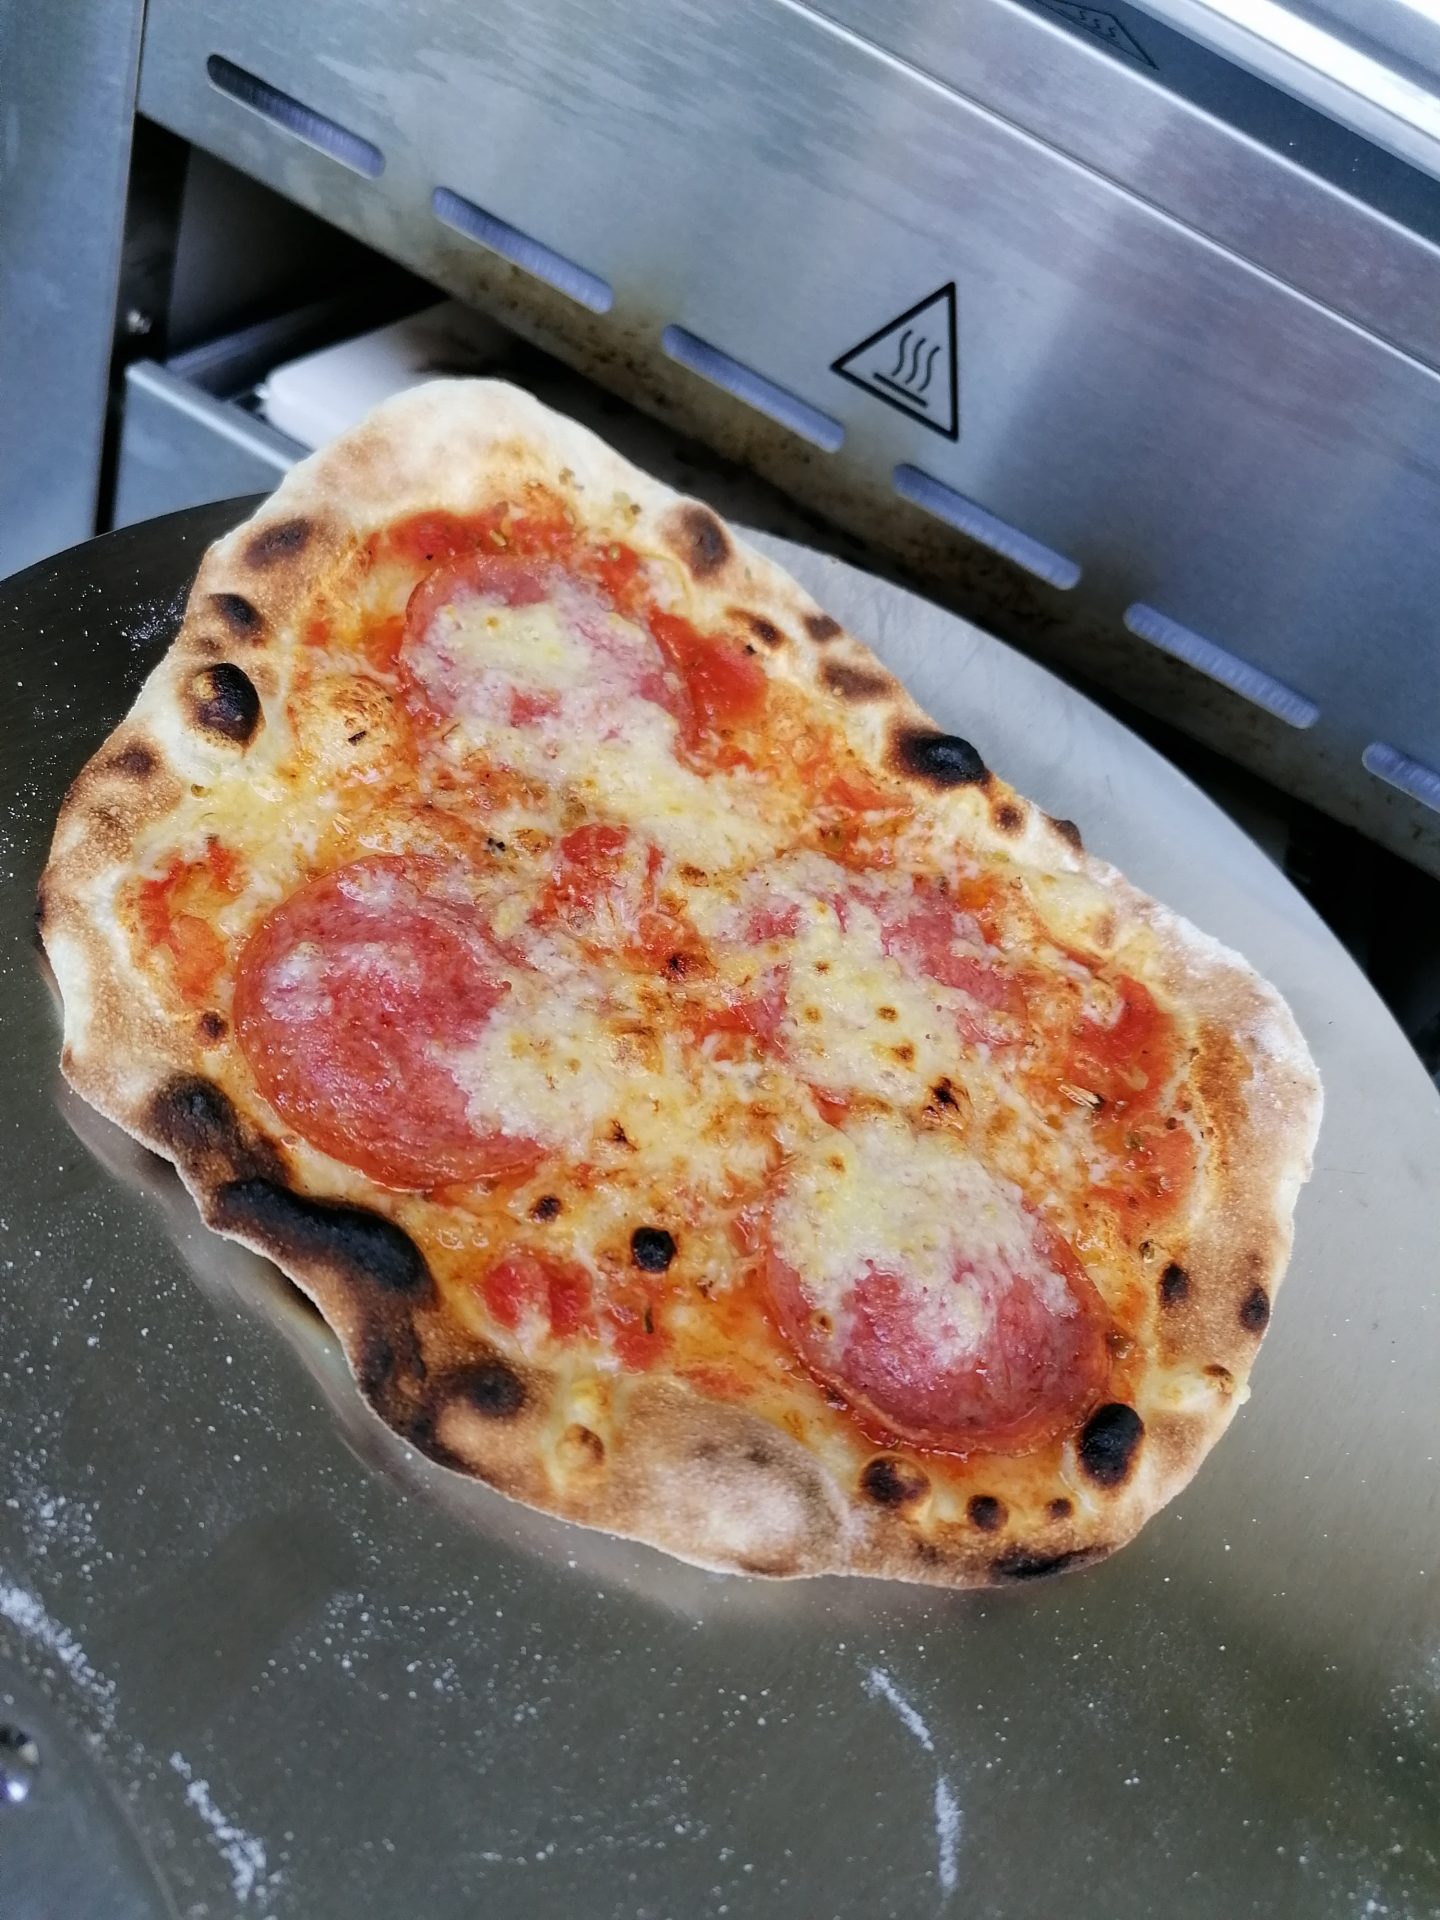 IMG 20200627 184339 1440x1920 - Pizza wie beim Italiener - aus dem OHG